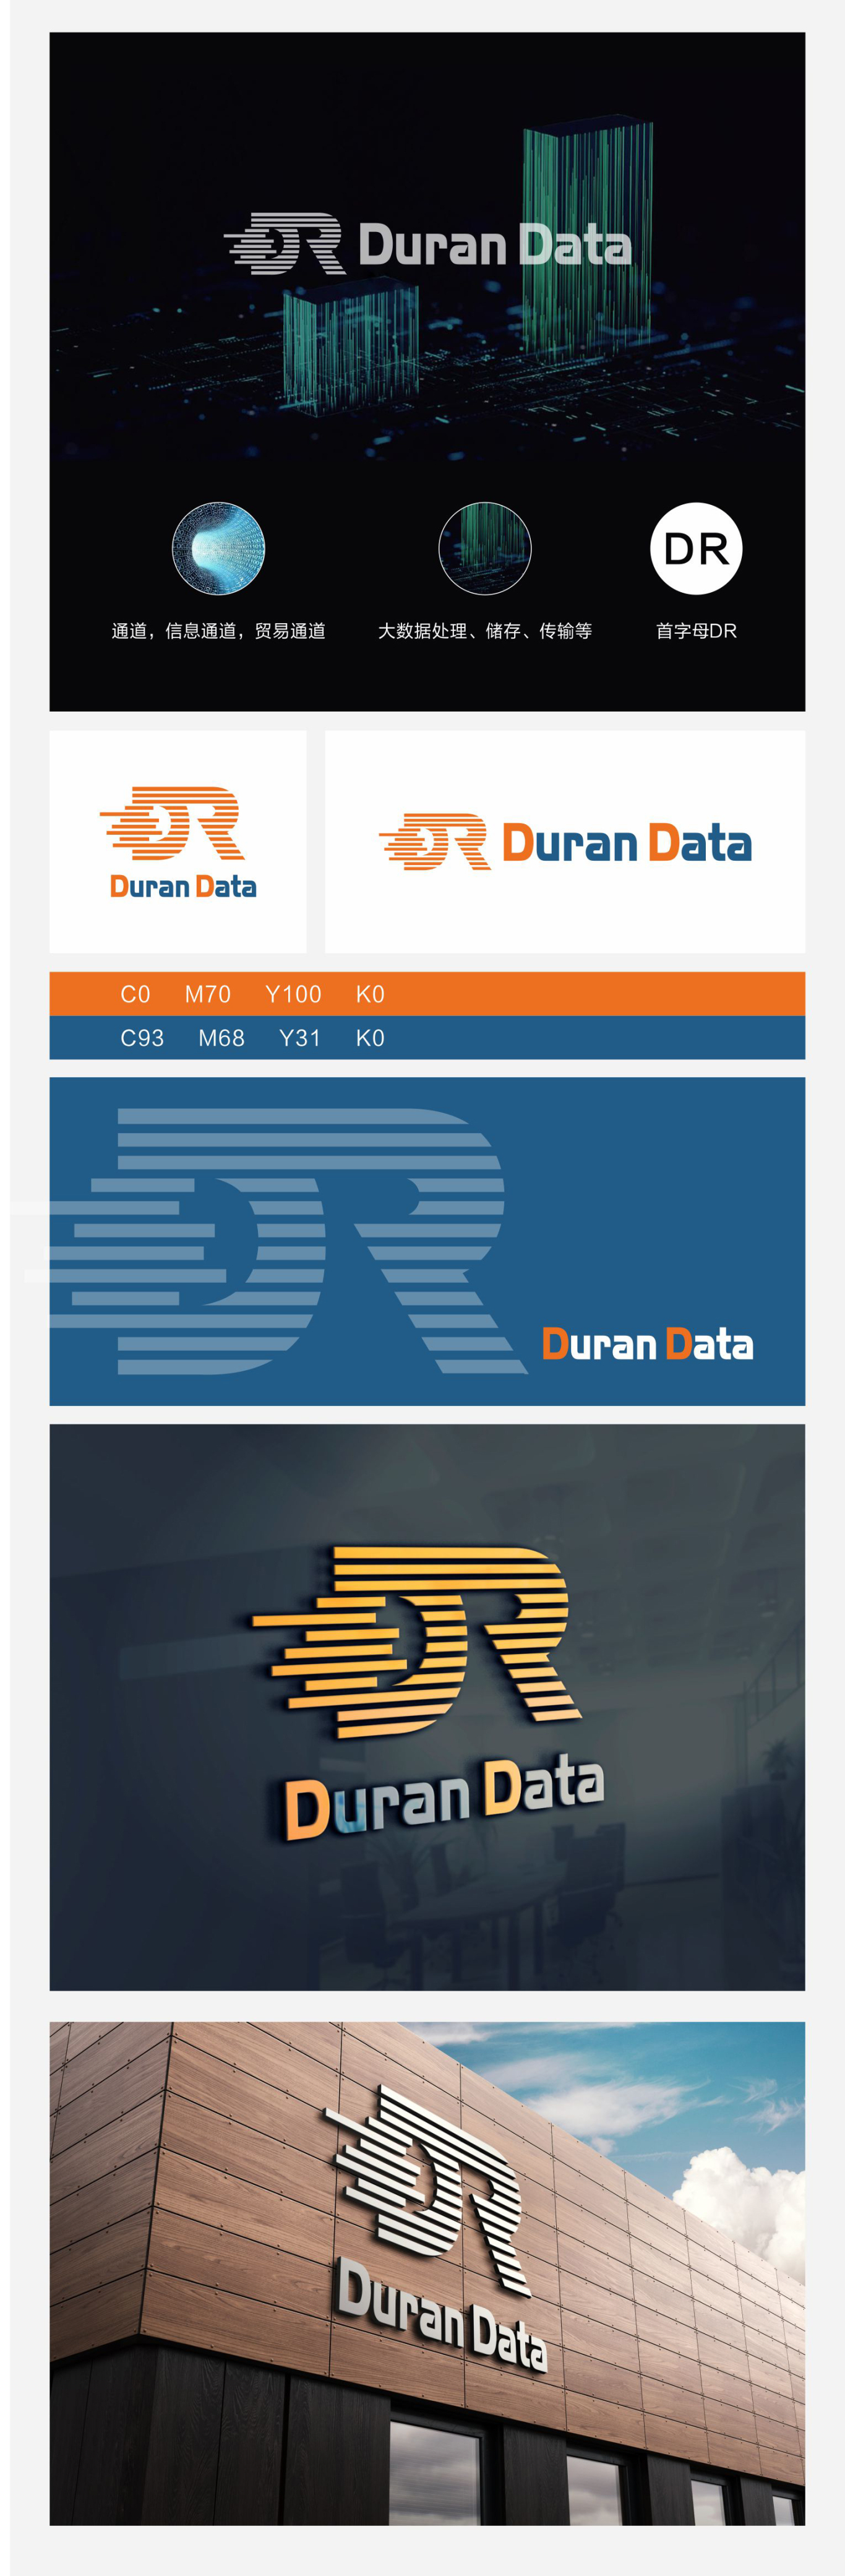 DR大数据logo项目设计图0